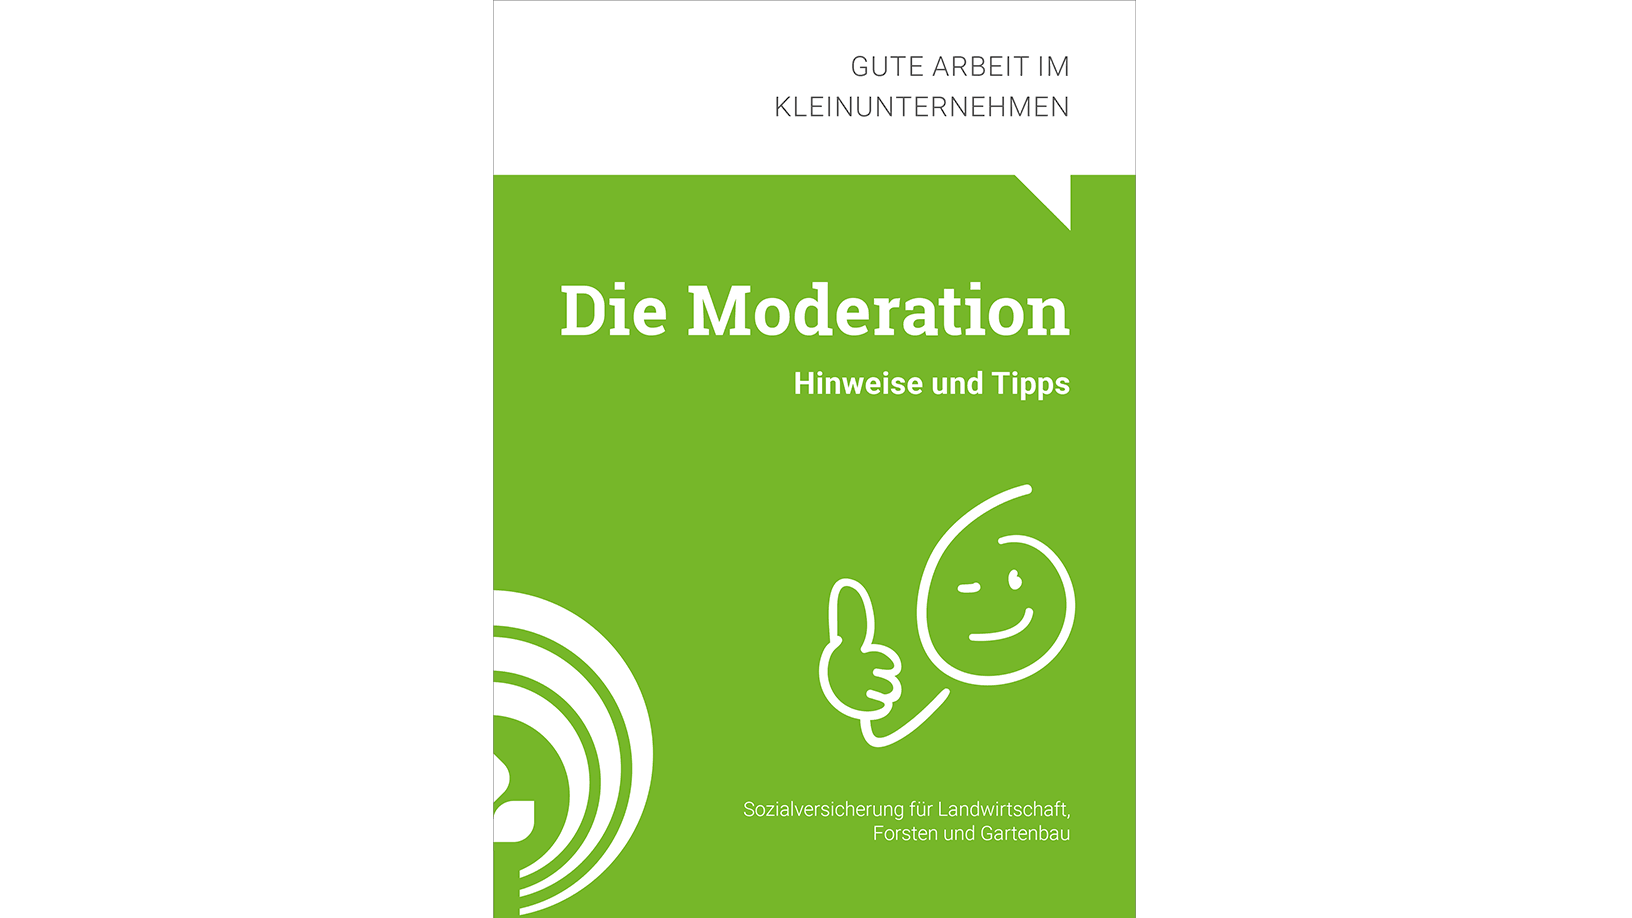 Titel der Broschüre "Die Moderation"